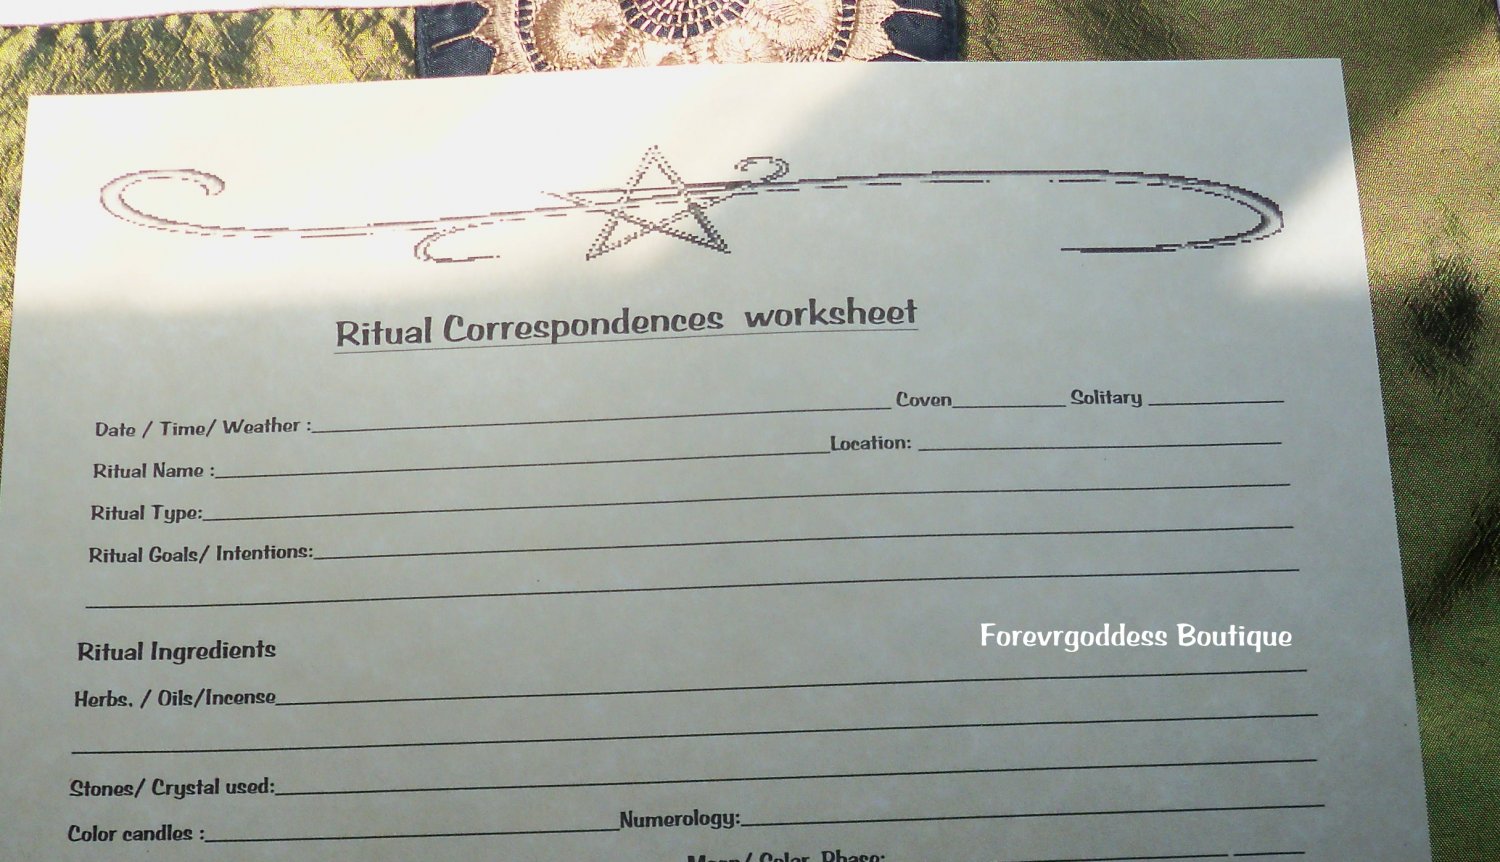 Ritual Corresponding Worksheet  # RW 01